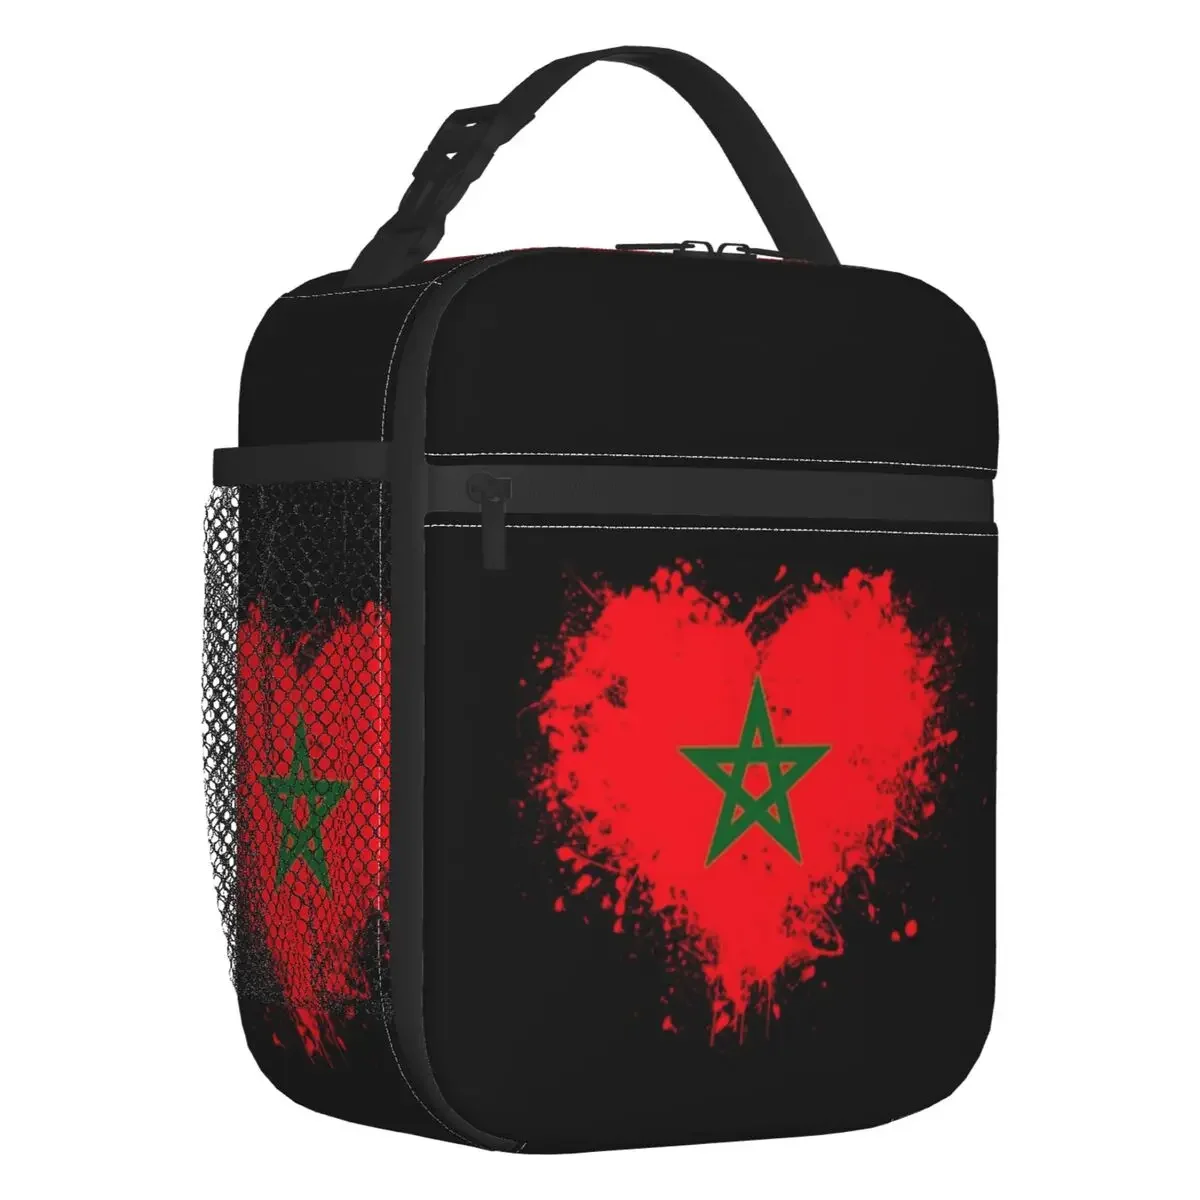 Пакеты для ланча с сердечками, утепленные флагом Марокко, для работы, школы, мавританские, марокканские, патриотические, Многоразовый термоохладитель, коробка для бенто, для женщин и детей